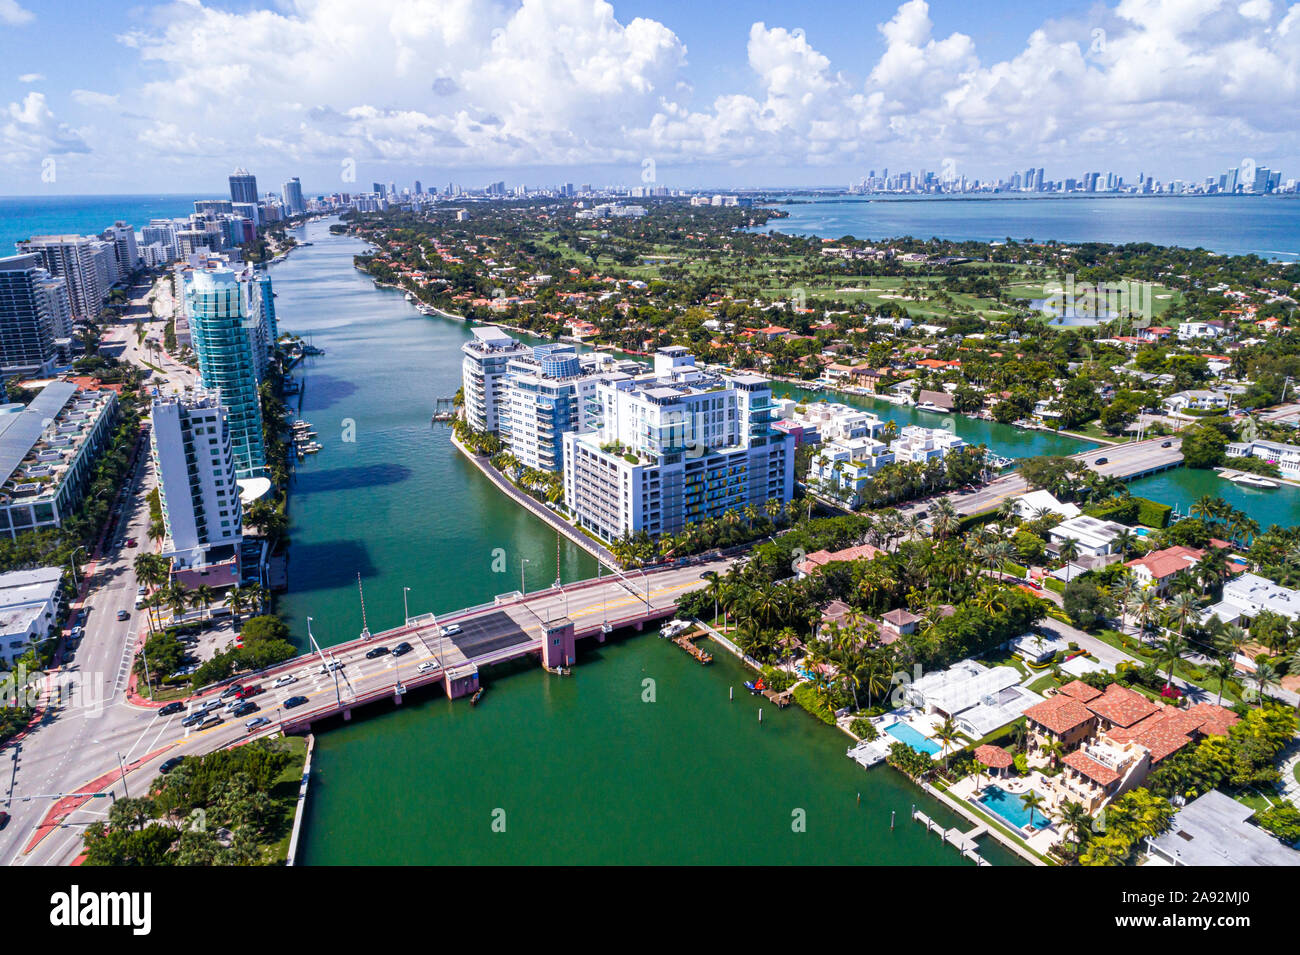 Miami Beach Florida, La Gorce Island, Allison Island, Biscayne Bay, Wasser, Häuser am Wasser, Hochhaus-Wohnhäuser, Indian Creek Drive, 6 Stockfoto